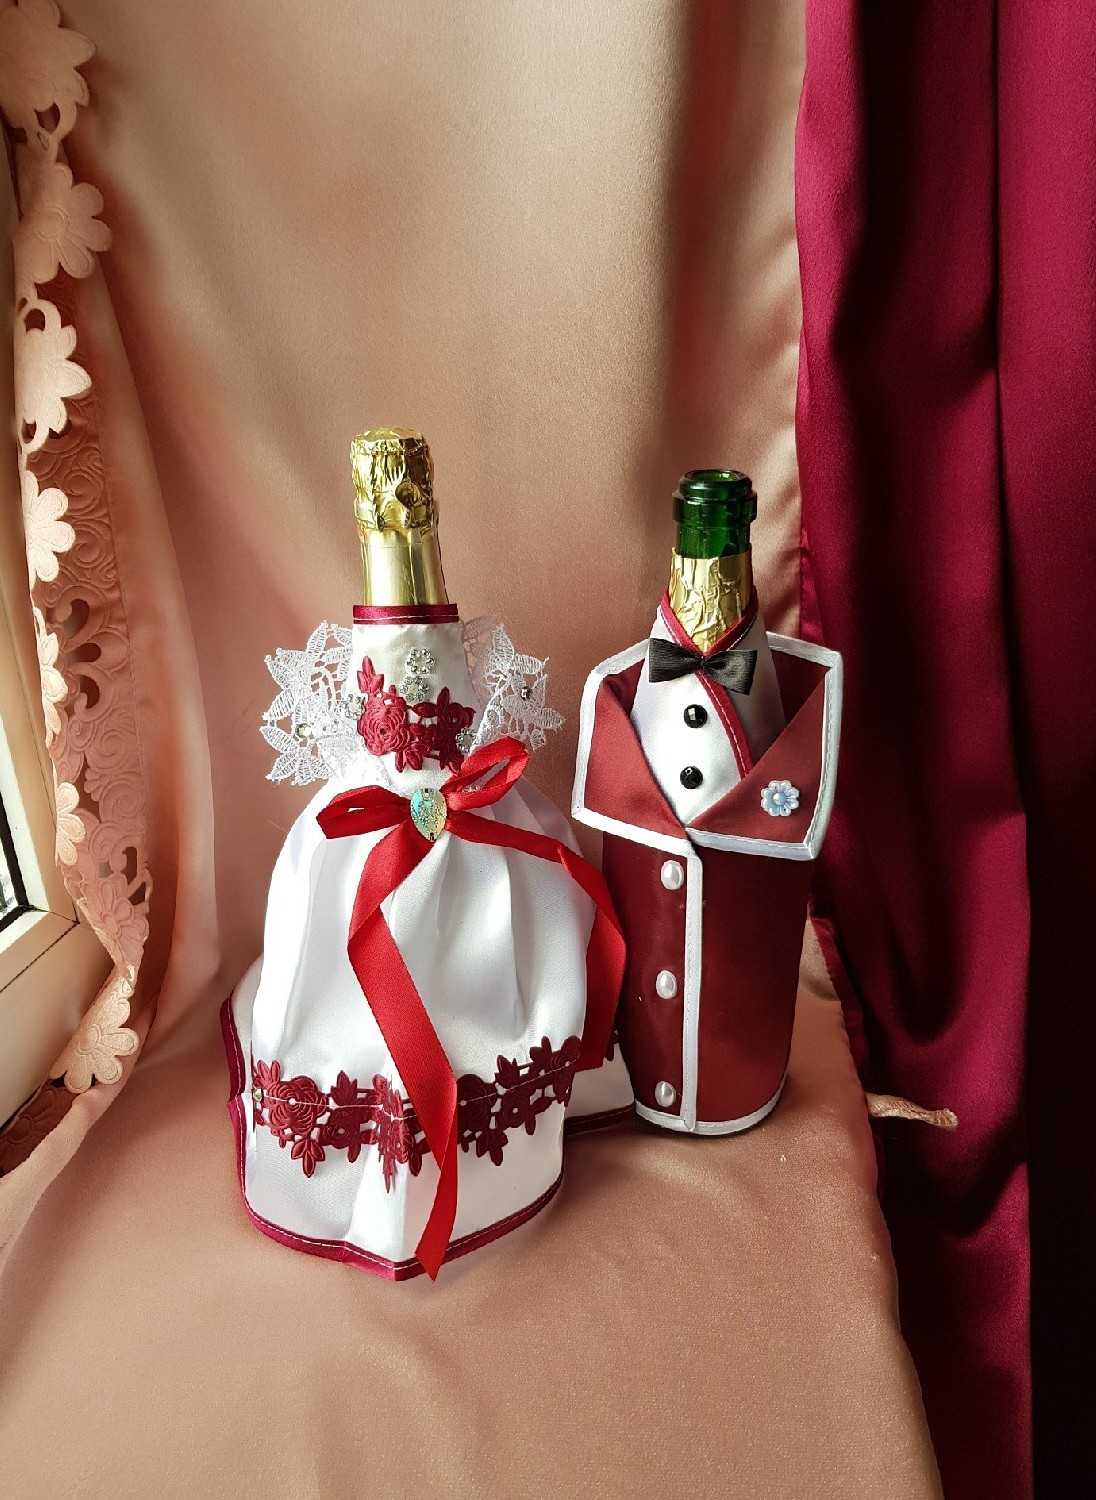 Как украсить бутылку шампанского на новый год 2020 своими руками: фото пошагово